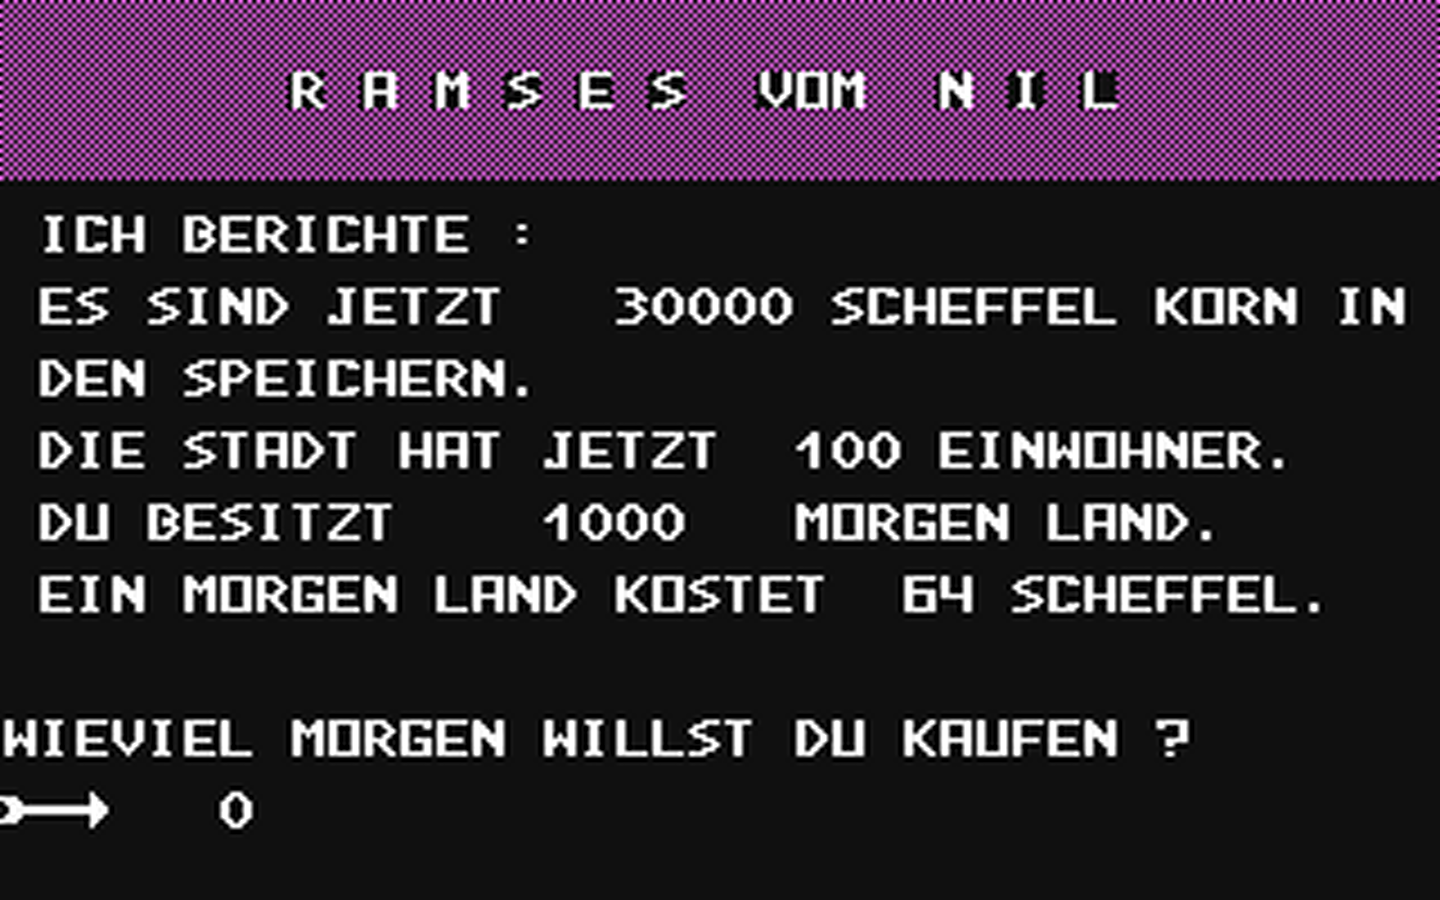 C64 GameBase Ramses_vom_Nil Vril 1983